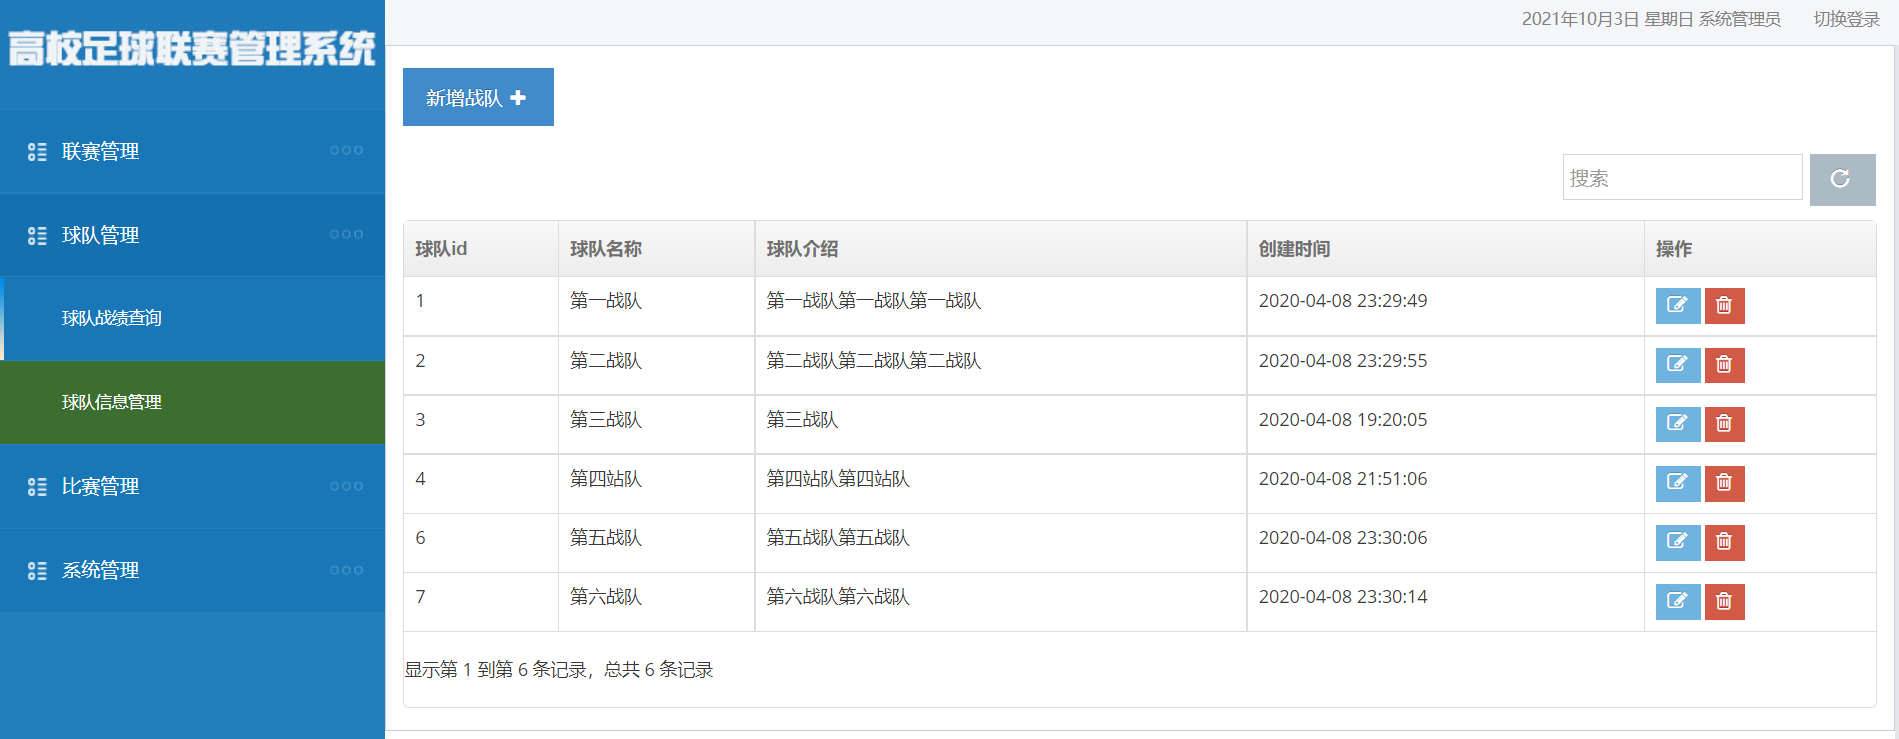 足球比赛数据库管理系统(SSM足球联赛管理系统)